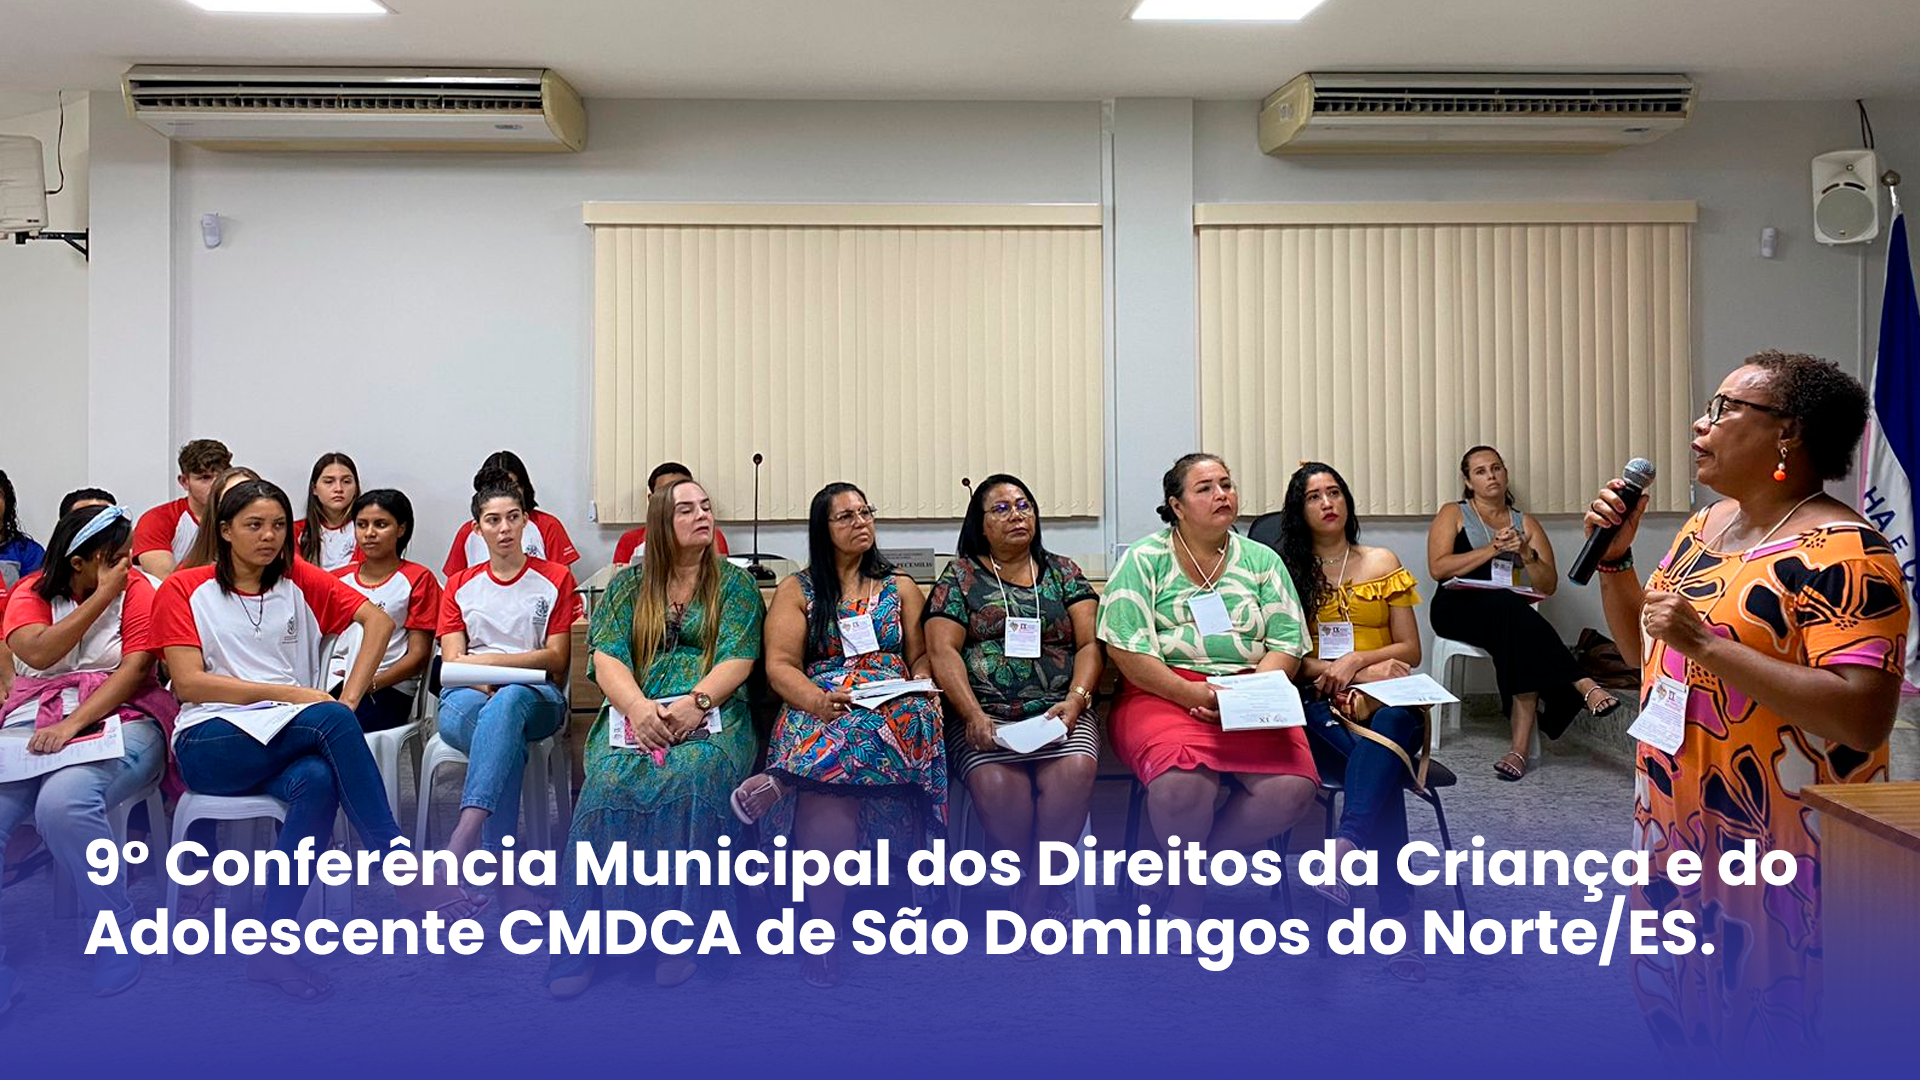 9° Conferência Municipal dos Direitos da Criança e do Adolescente CMDCA de São Domingos do Norte/ES